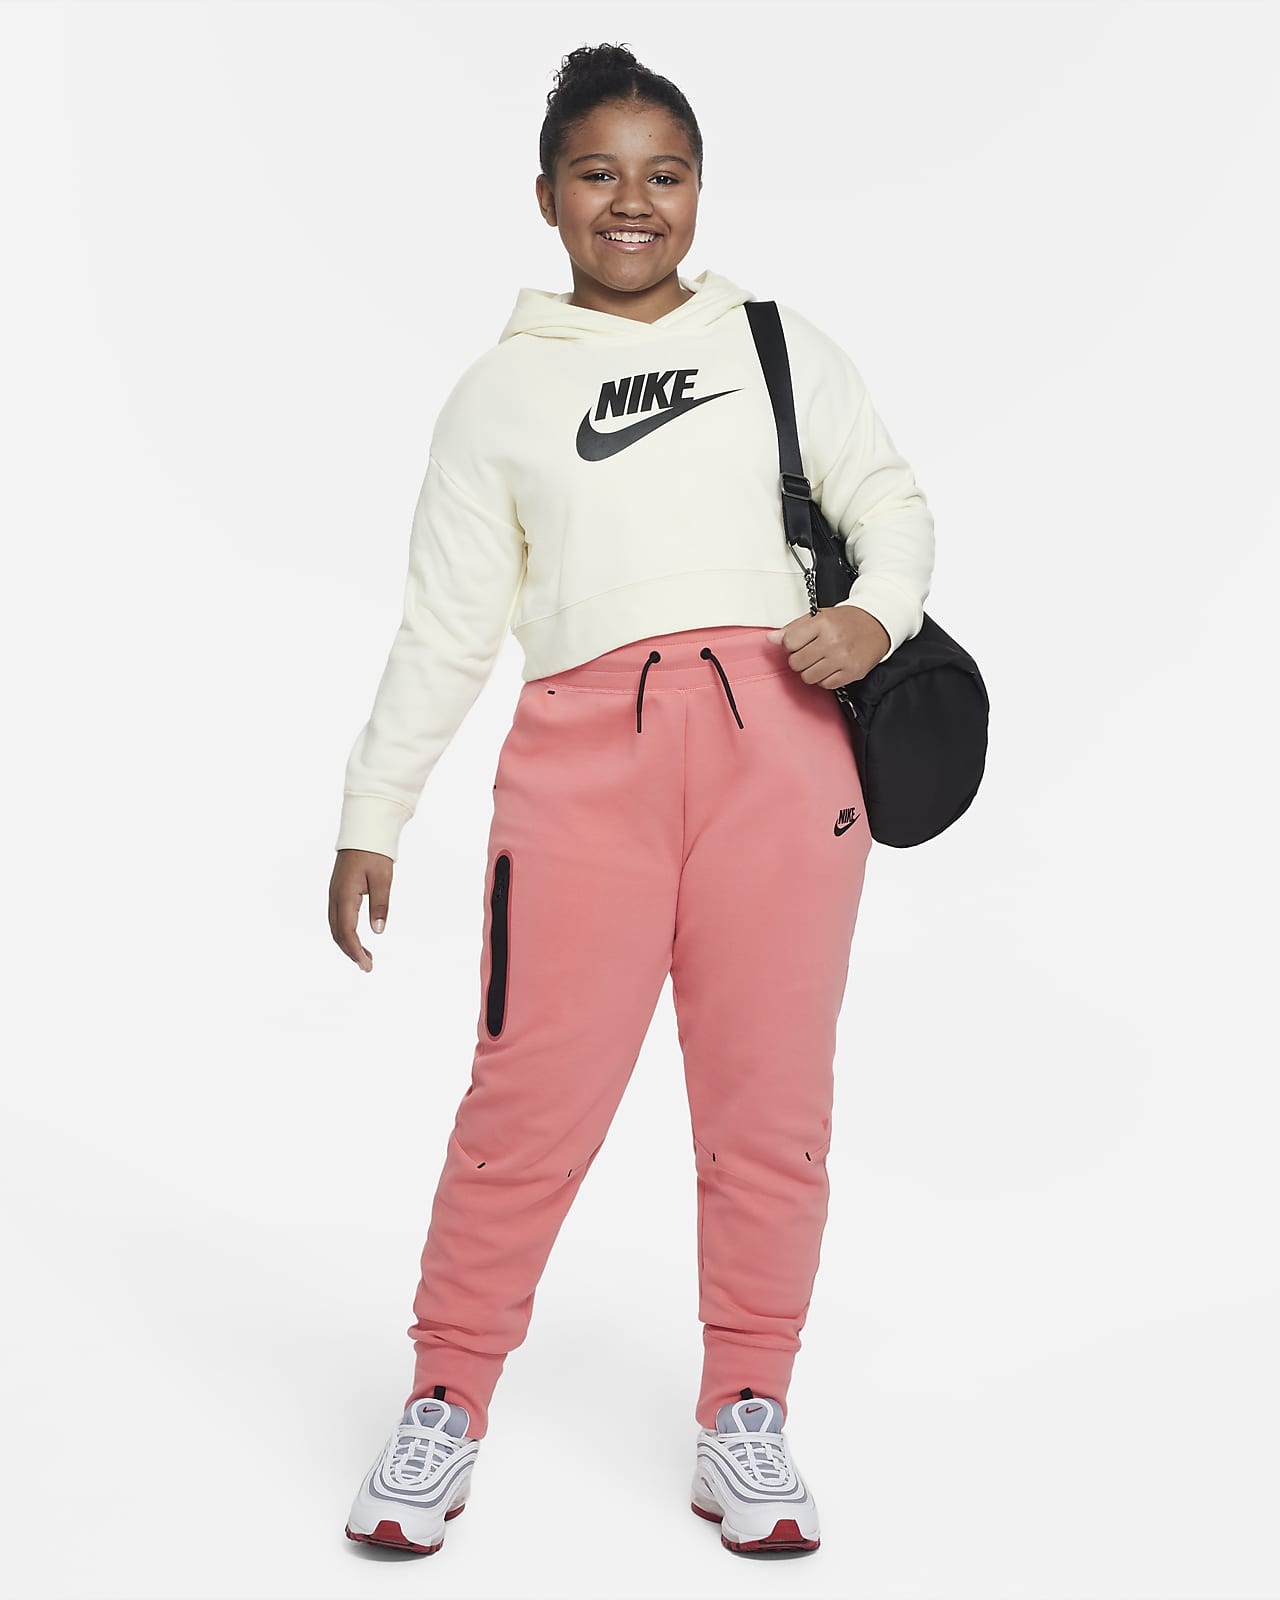 periodista Será Tomar un riesgo Pants para niña talla grande (talla amplia) Nike Sportswear Tech Fleece.  Nike.com